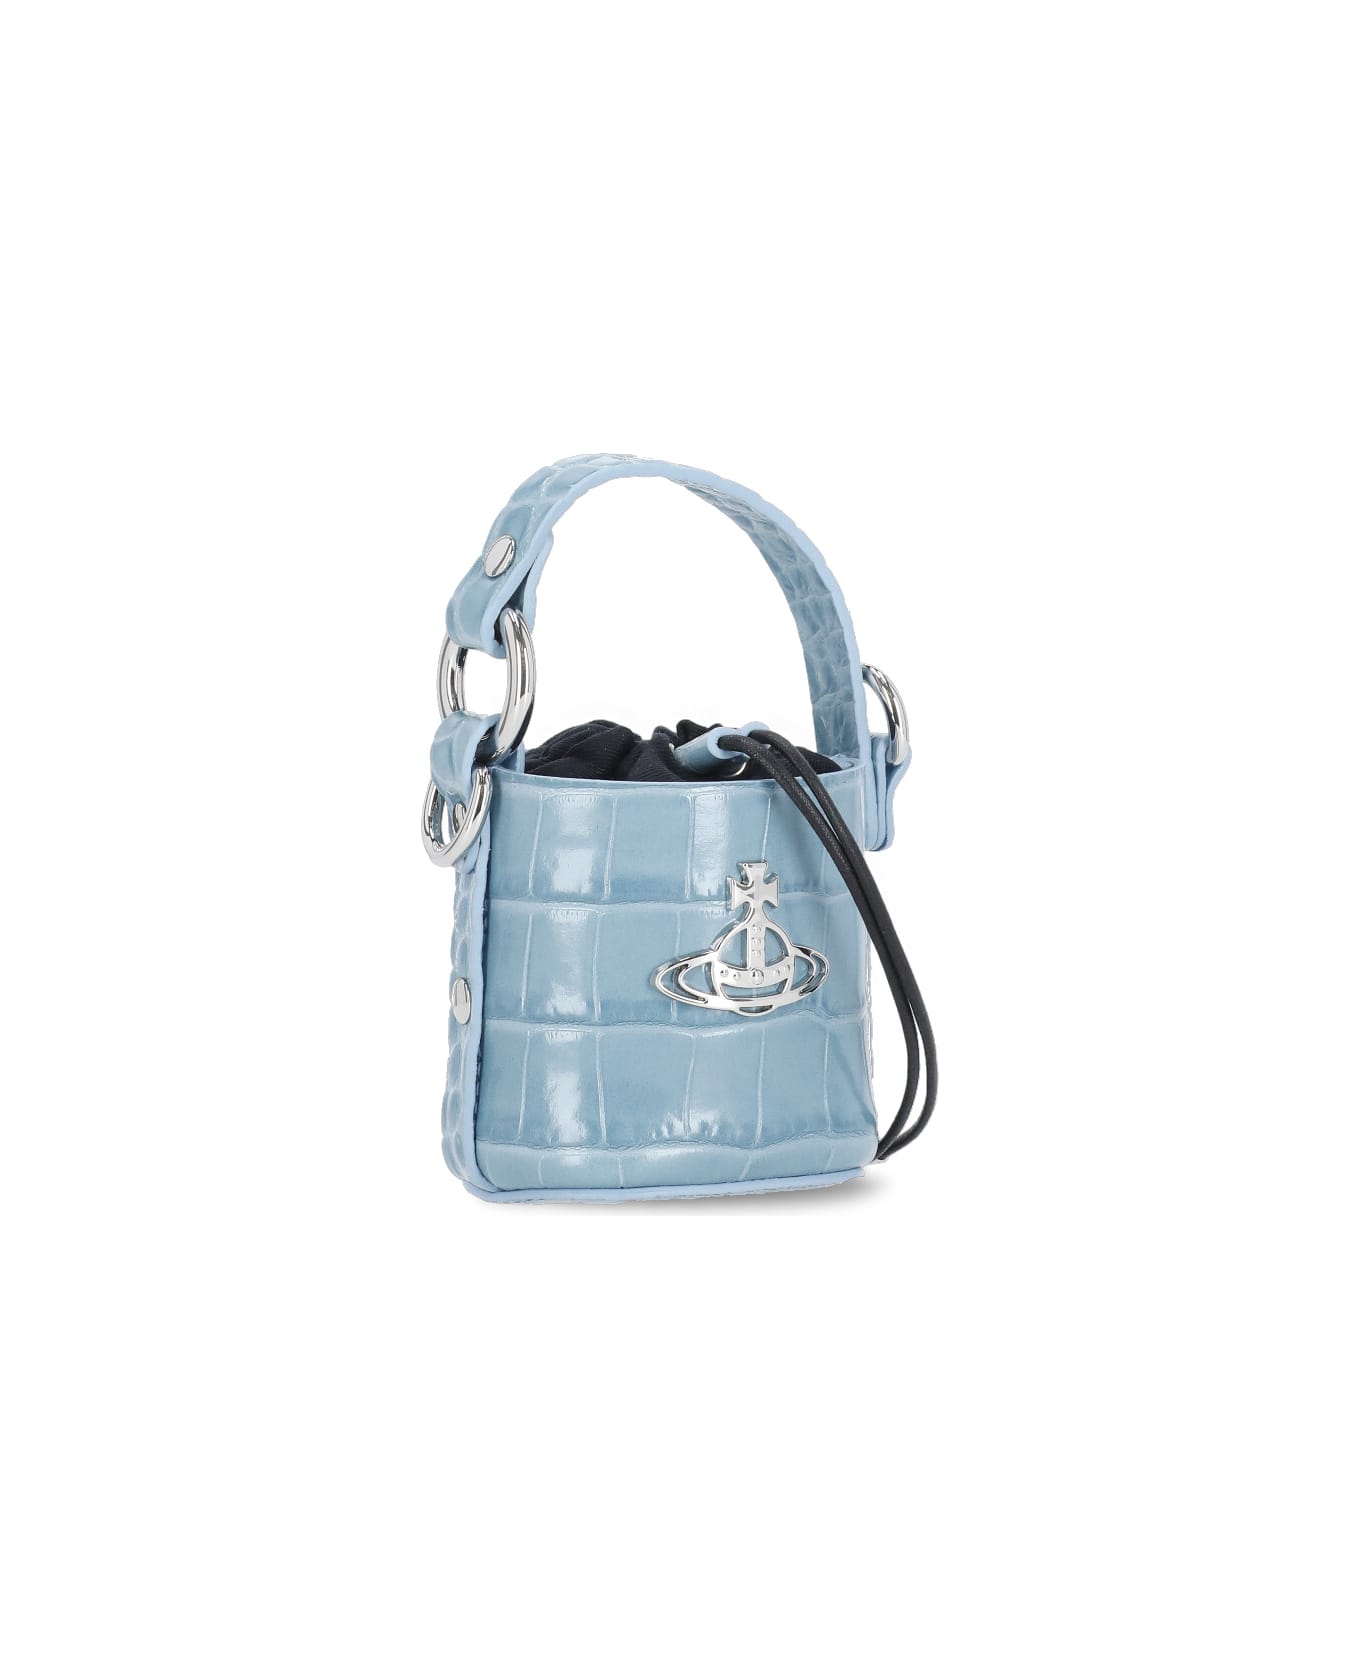 Vivienne Westwood Mini Daisy Bag - Light Blue